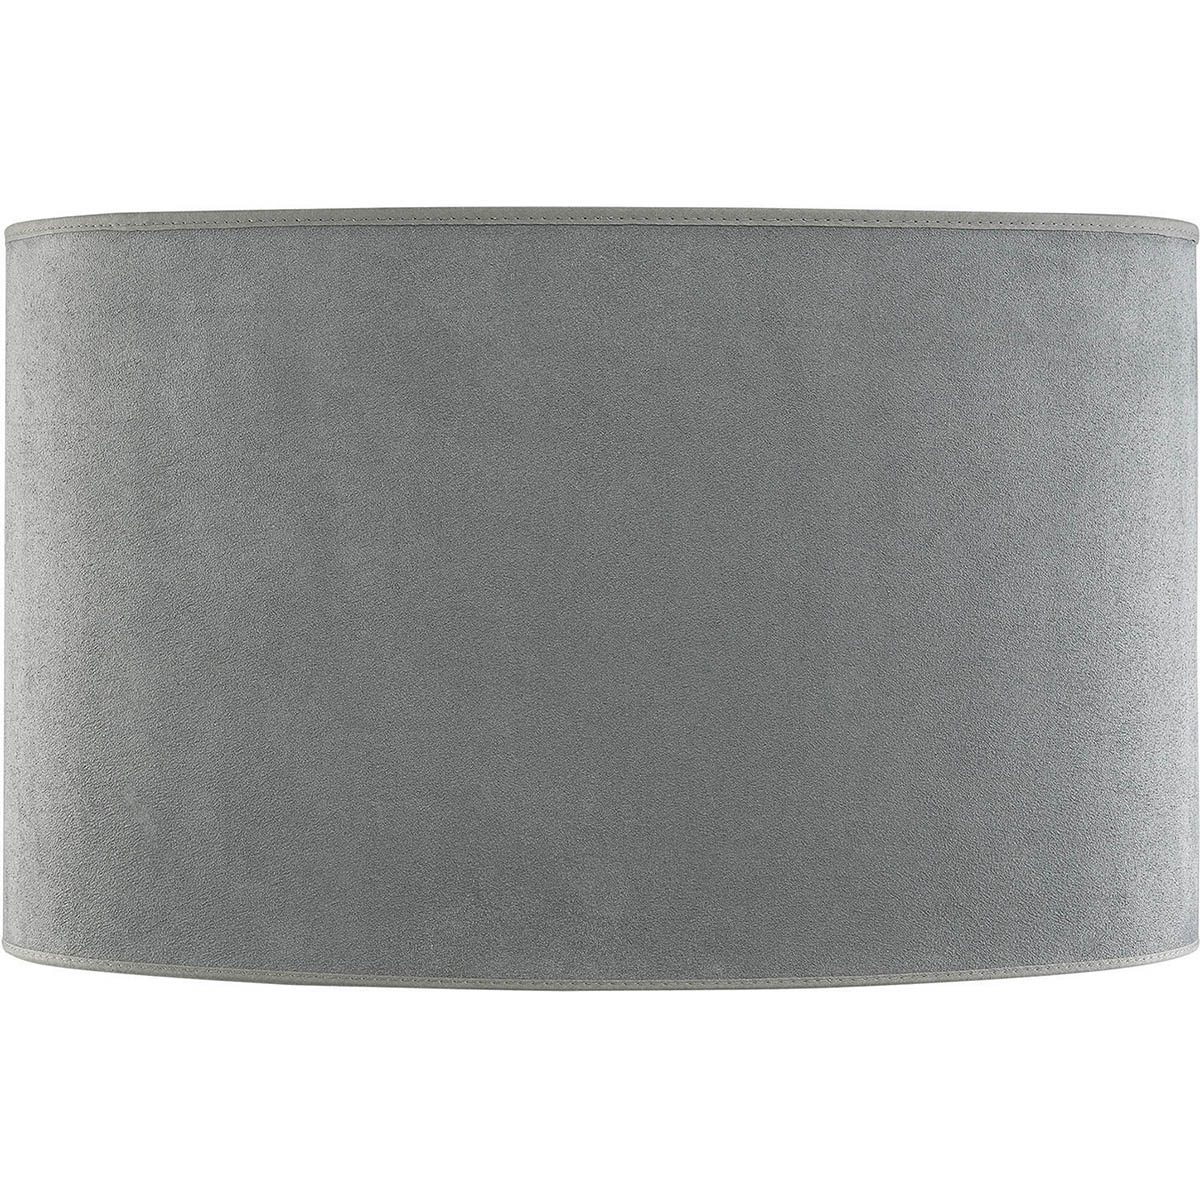 Oval lampskärm med bredden 60 cm och djupet 28 cm.